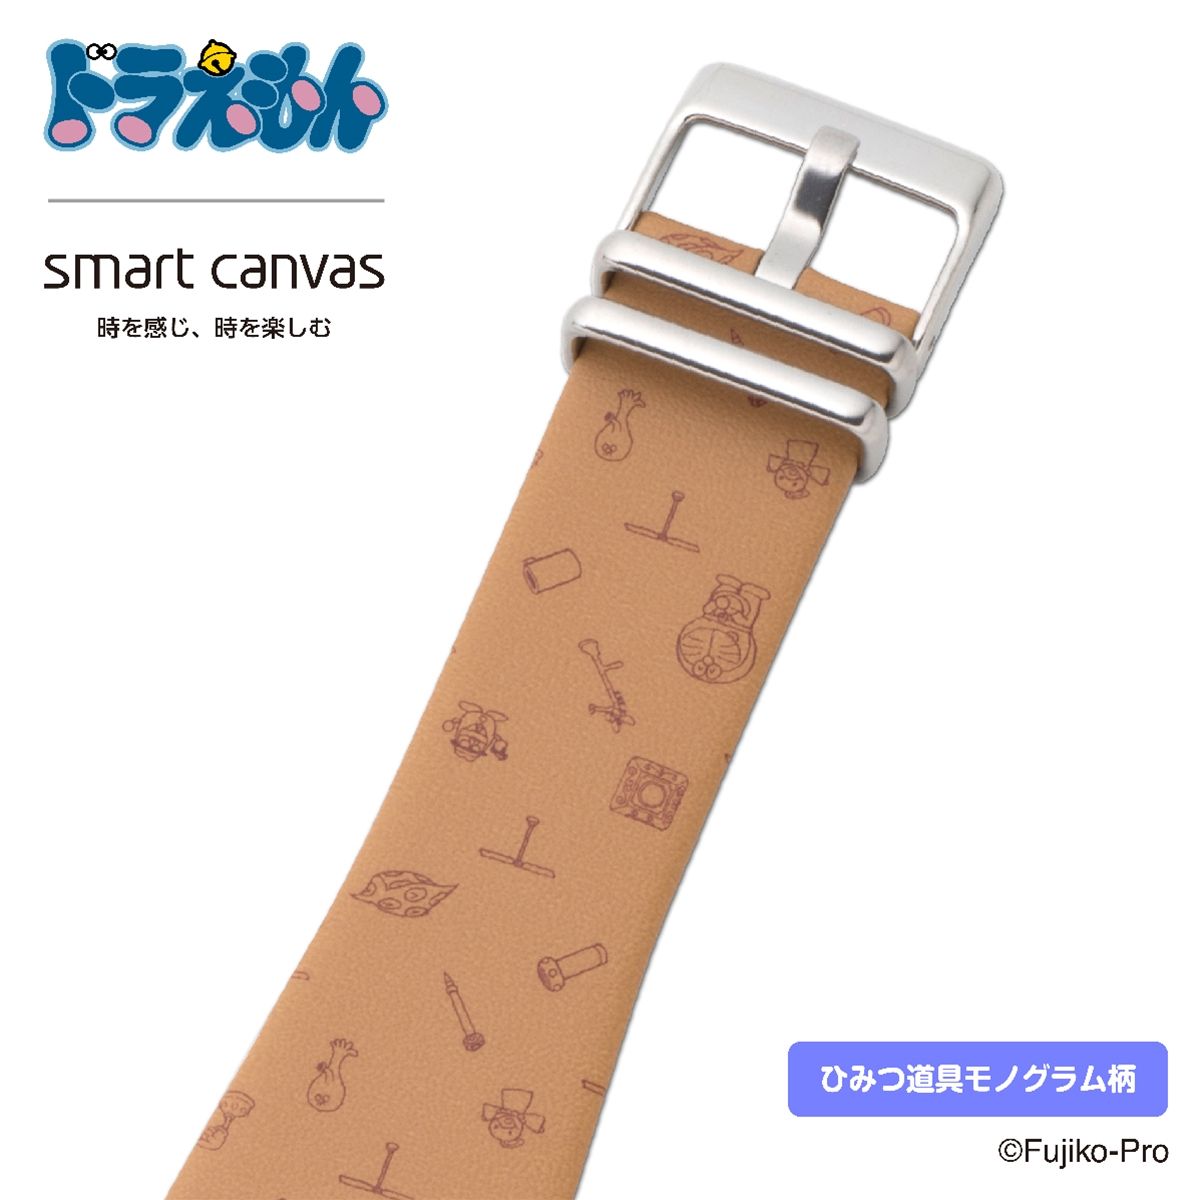 ドラえもん Smart Canvas スマートキャンバス 腕時計ベルト 付け替え用ベルト単品 ドラえもん 趣味 コレクション バンダイナムコグループ公式通販サイト